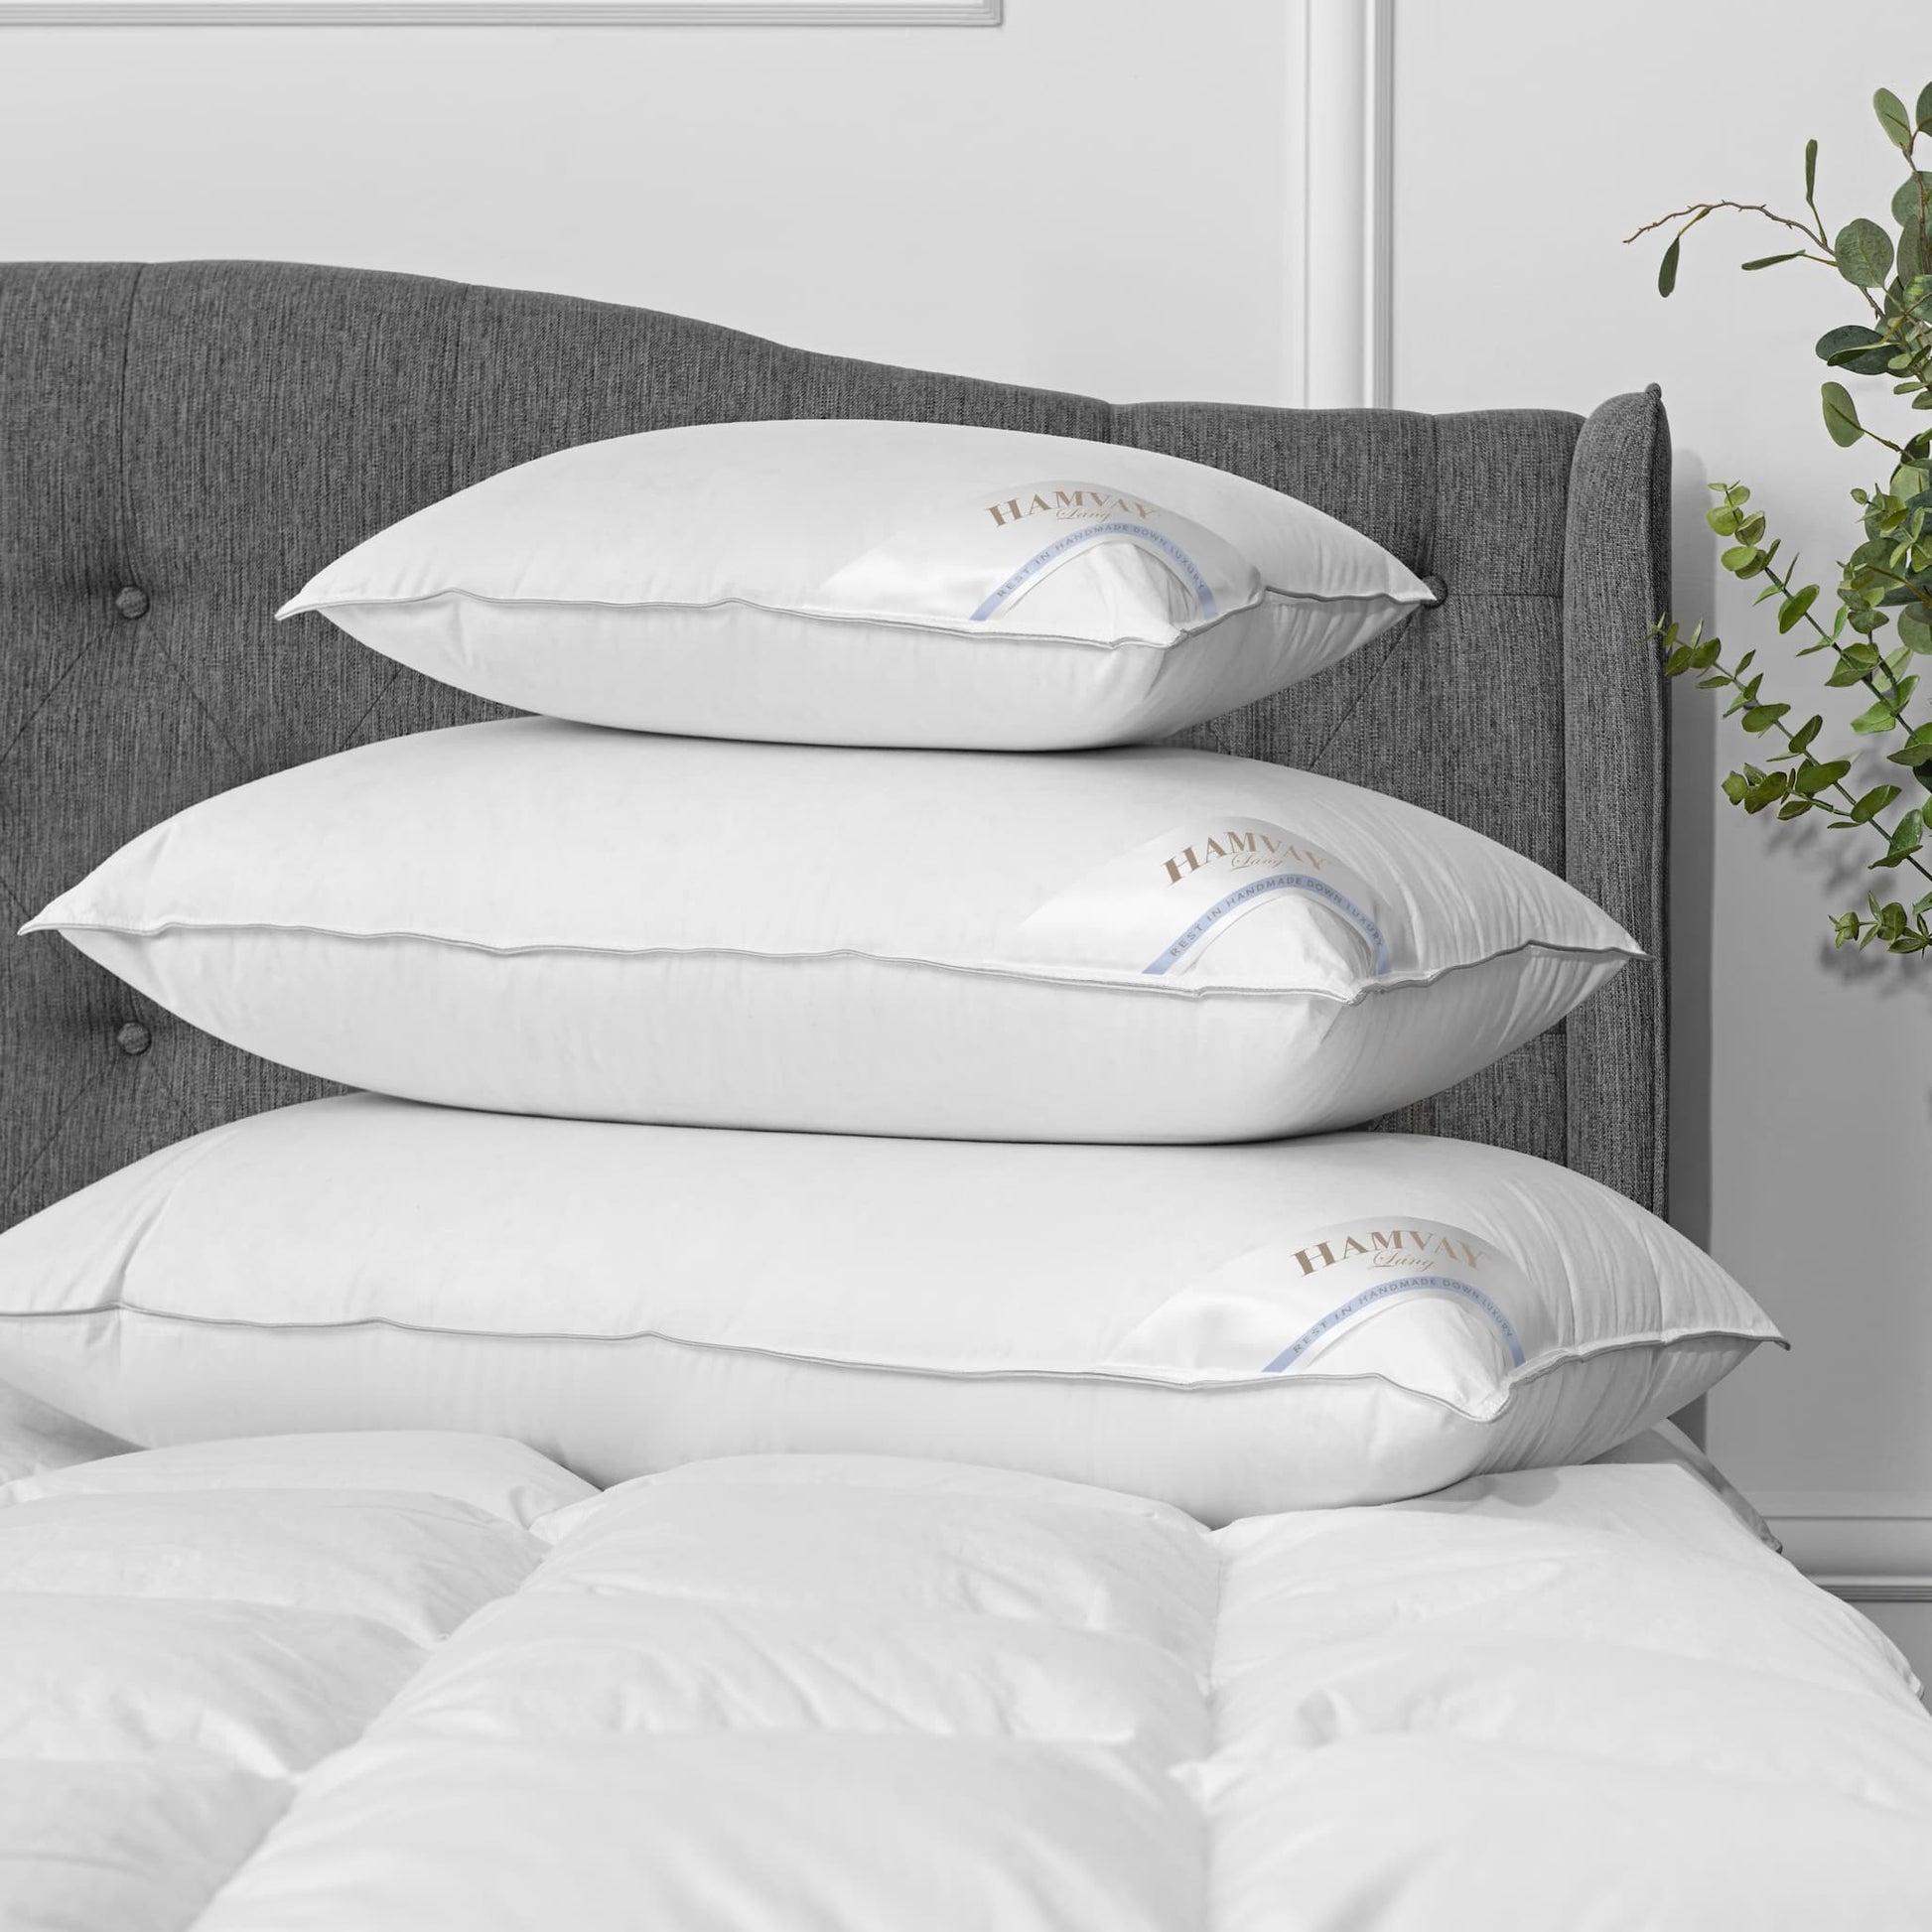 Pillow & Comforter Set – Hamvay-Láng